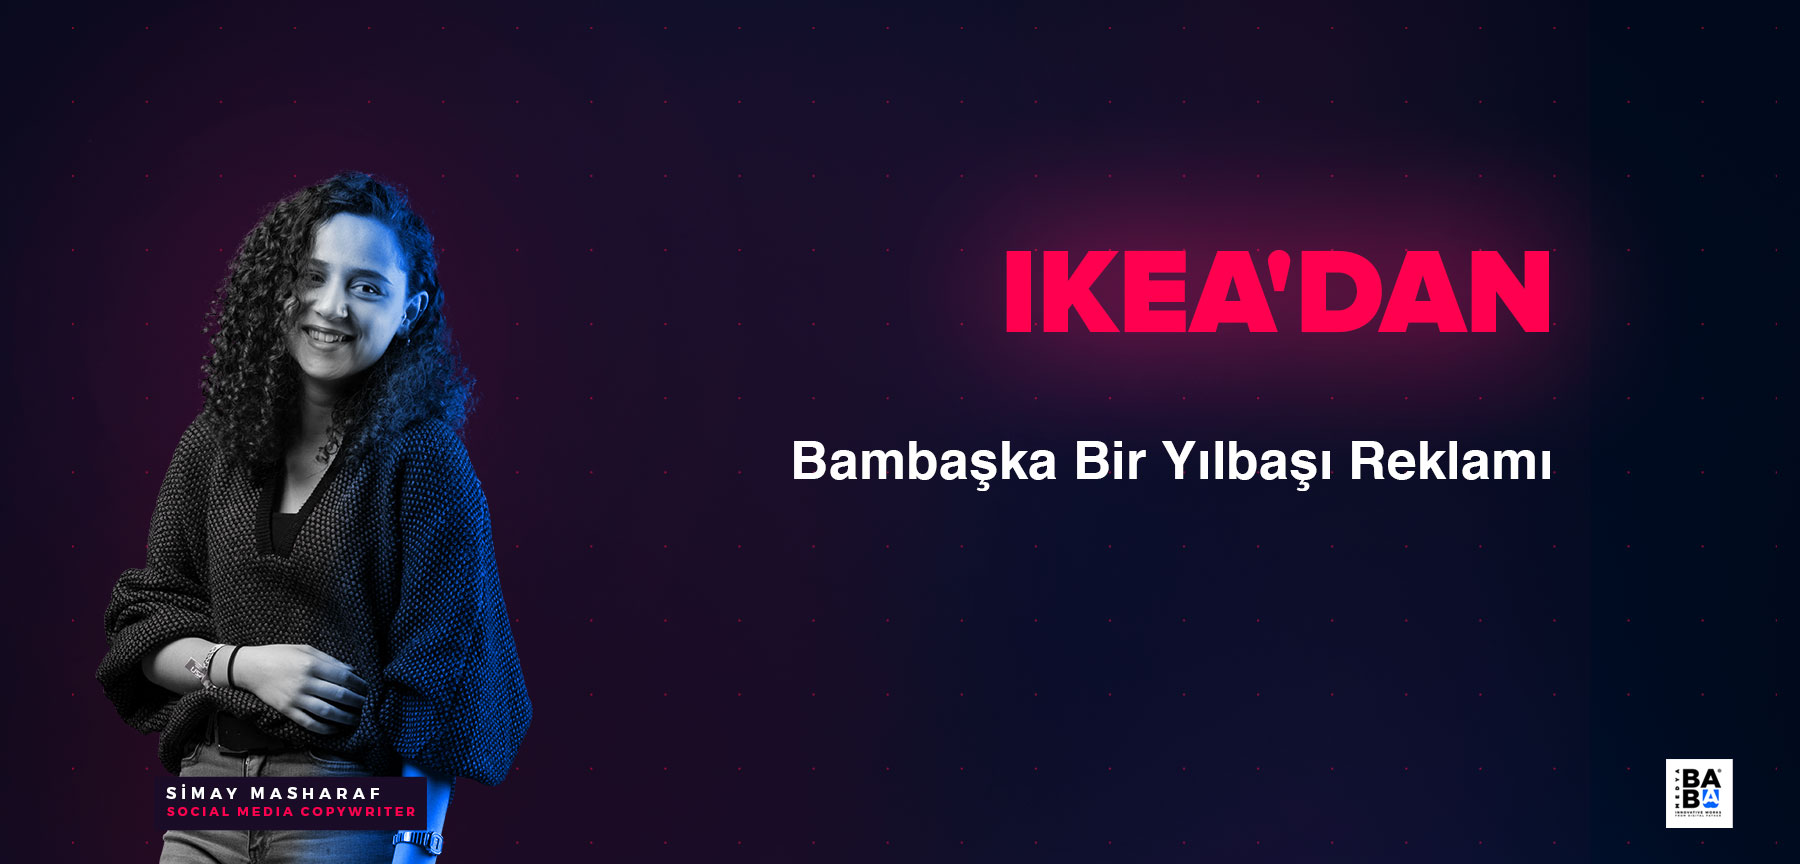 IKEA'dan Bambaşka Bir Yılbaşı Reklamı